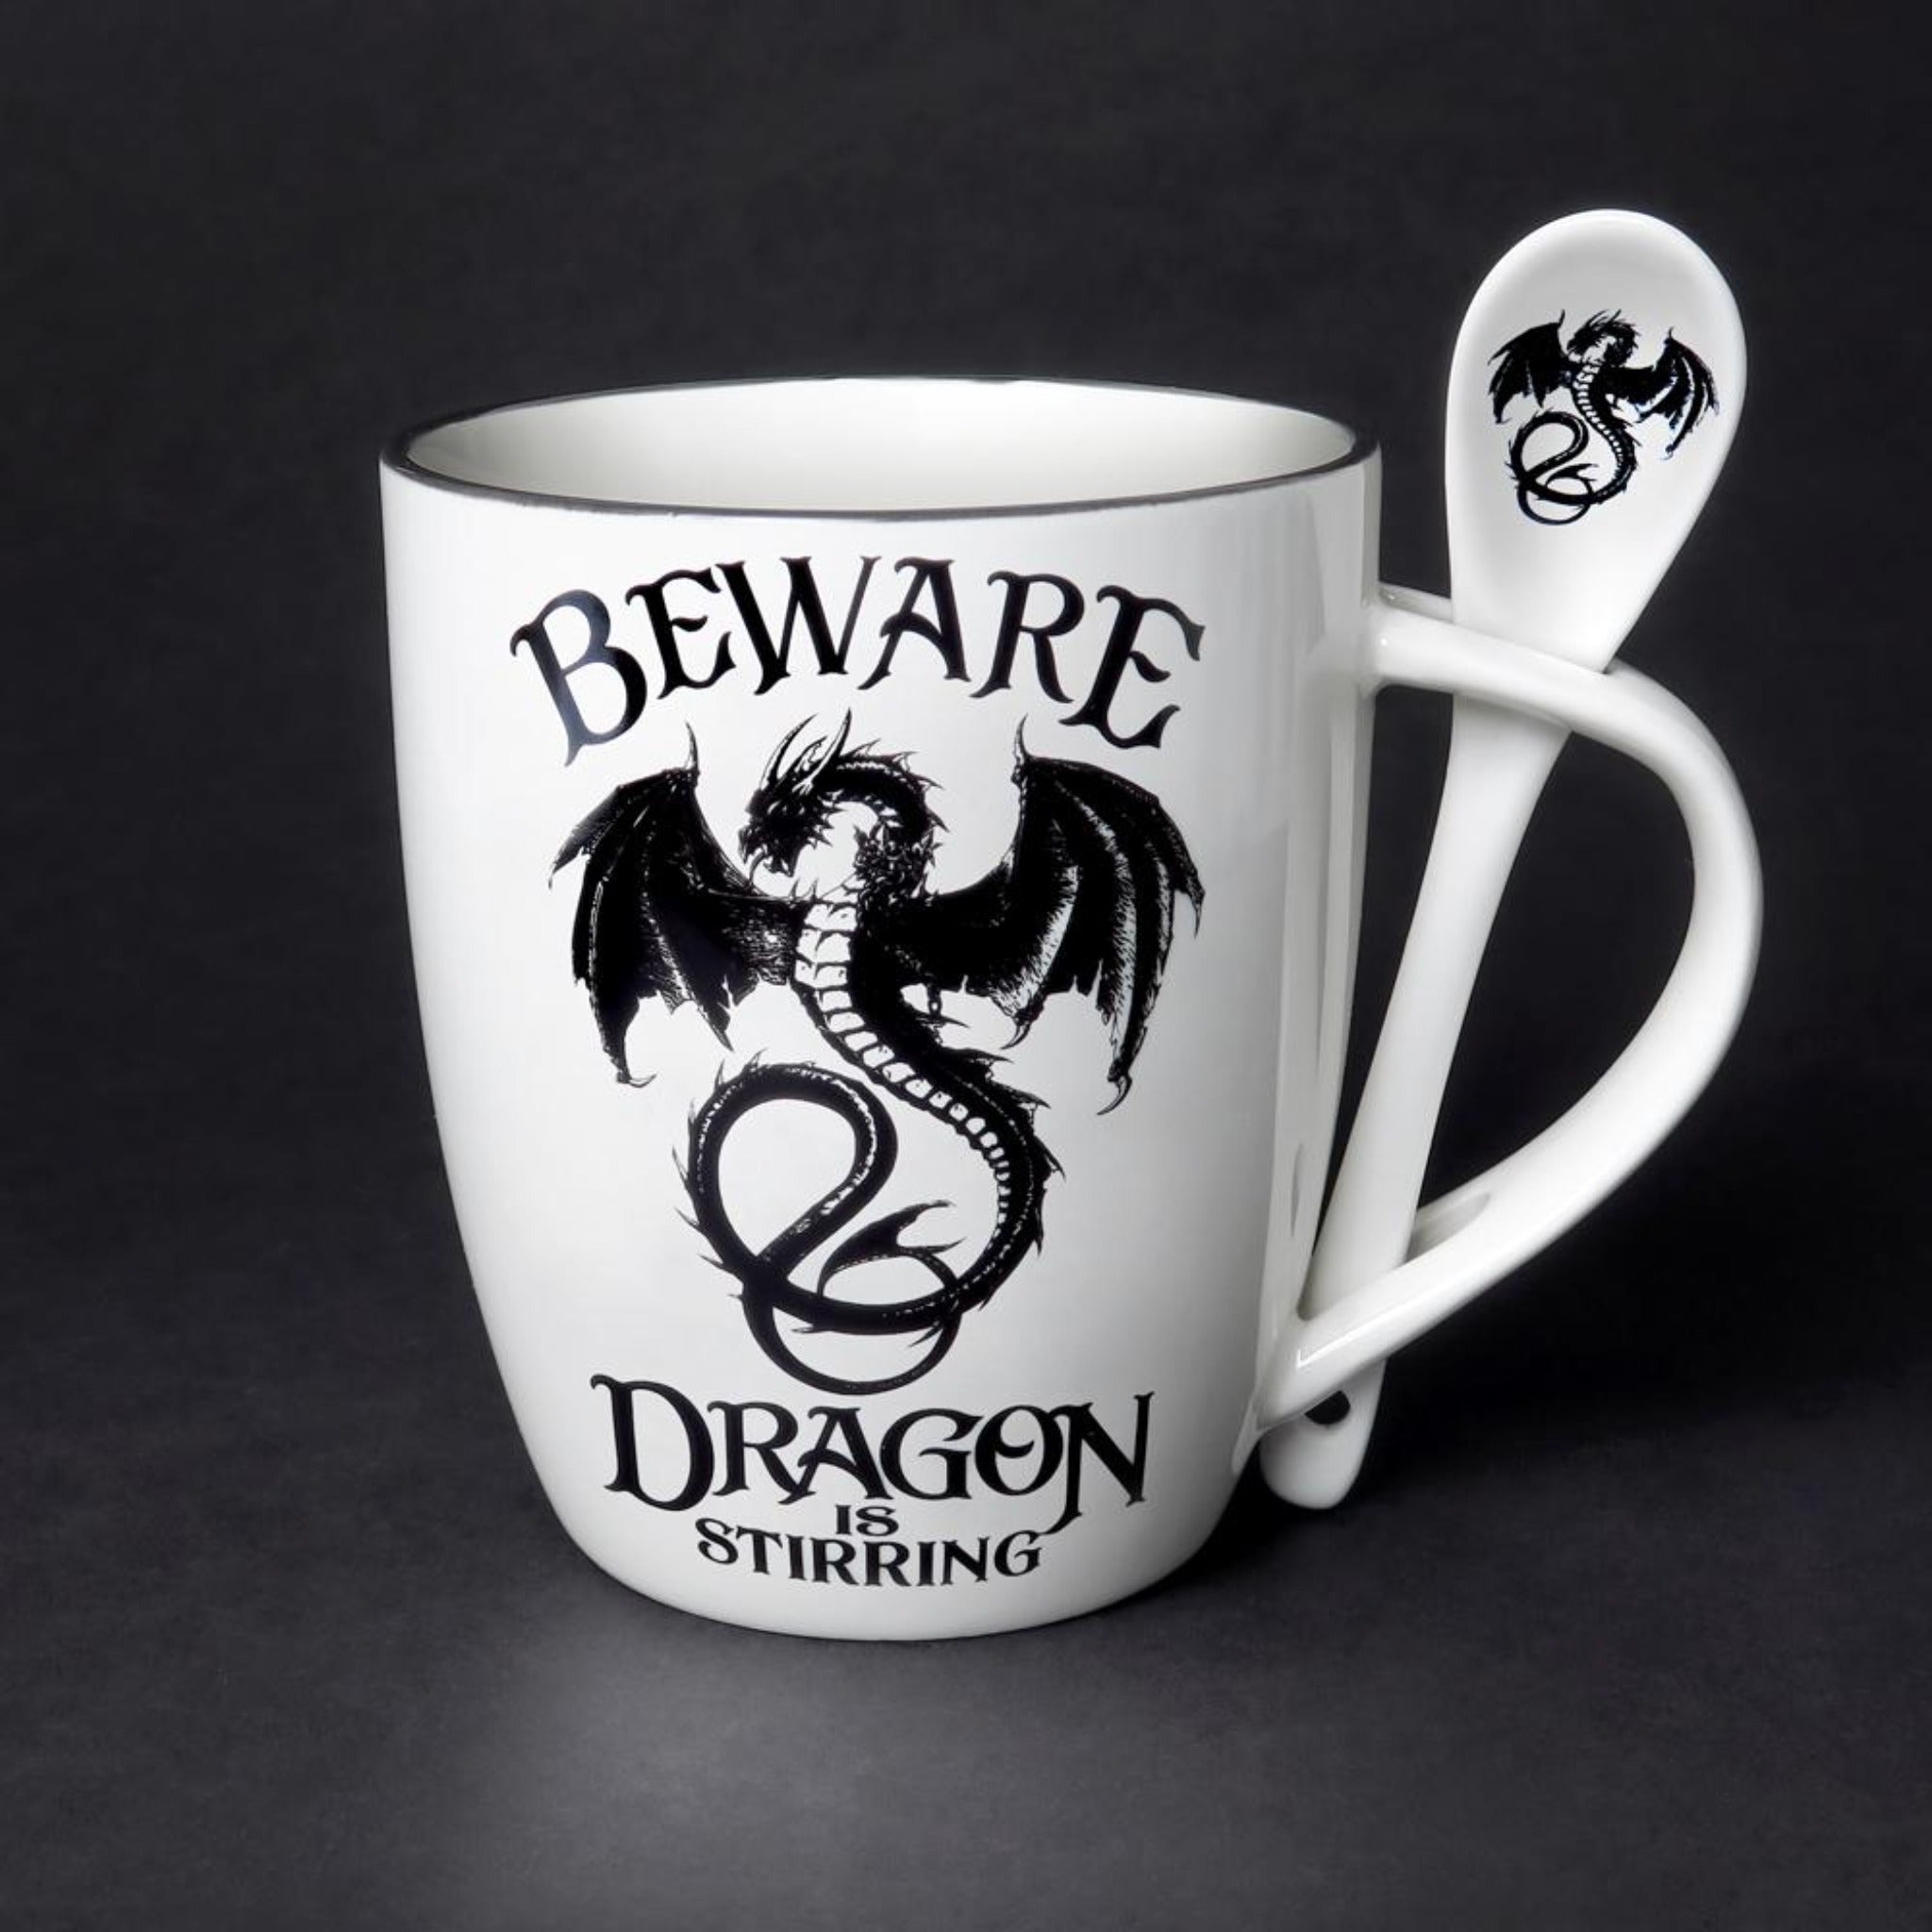 The Dragon Is Stirring Mug & Spoon Set